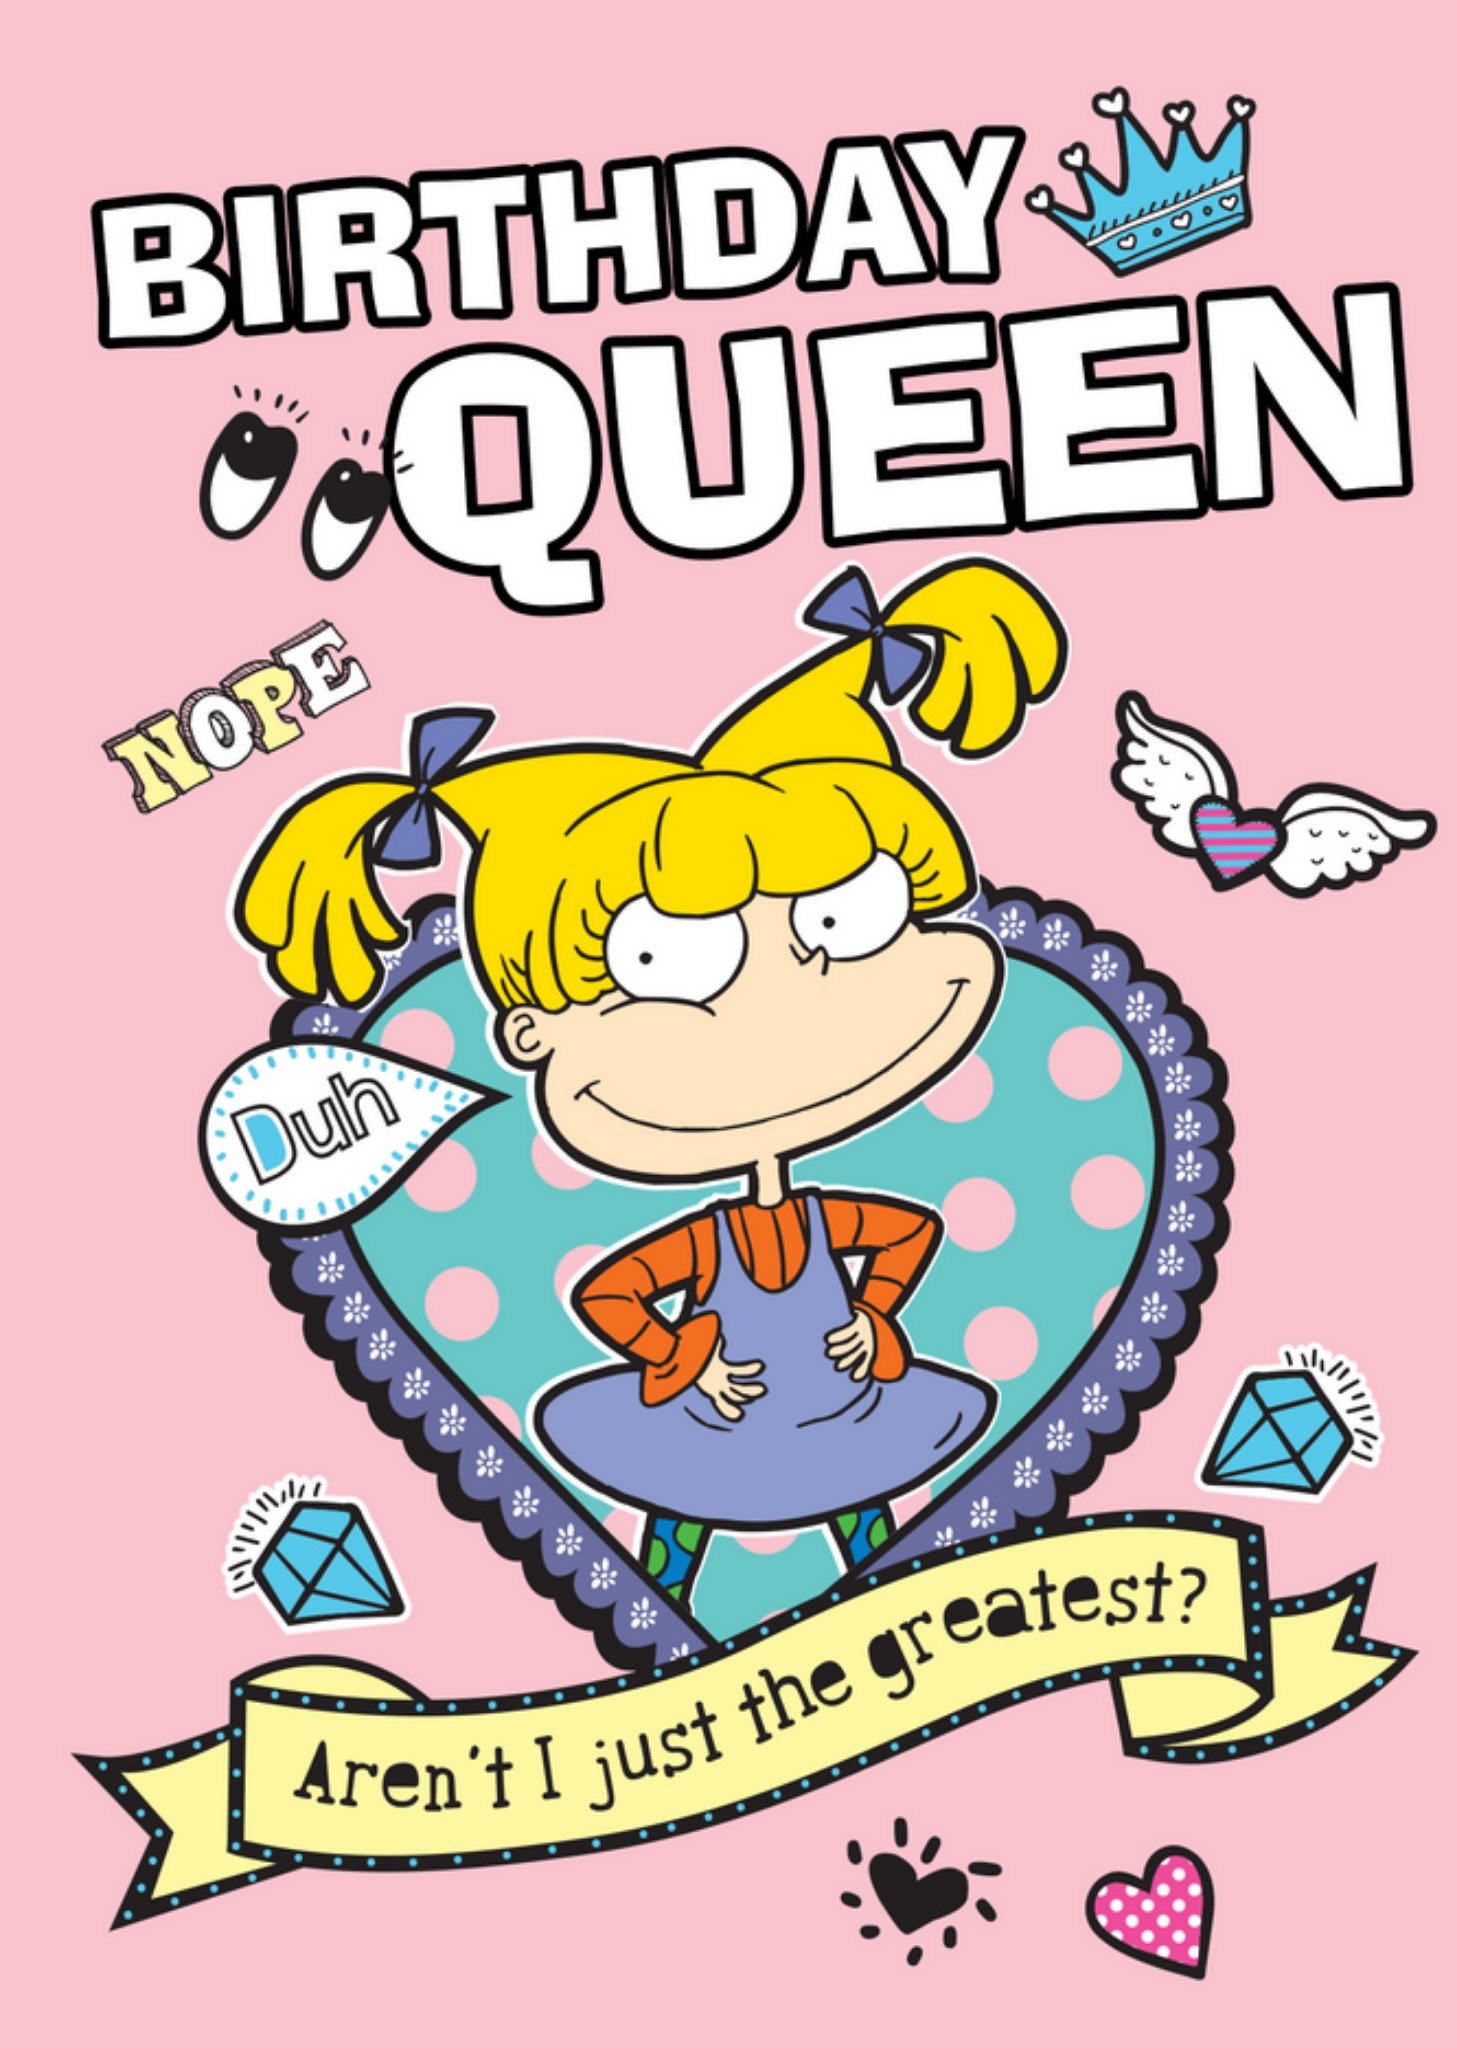 Nickelodeon Rugrats Angelica Birthday Queen Card Ecard